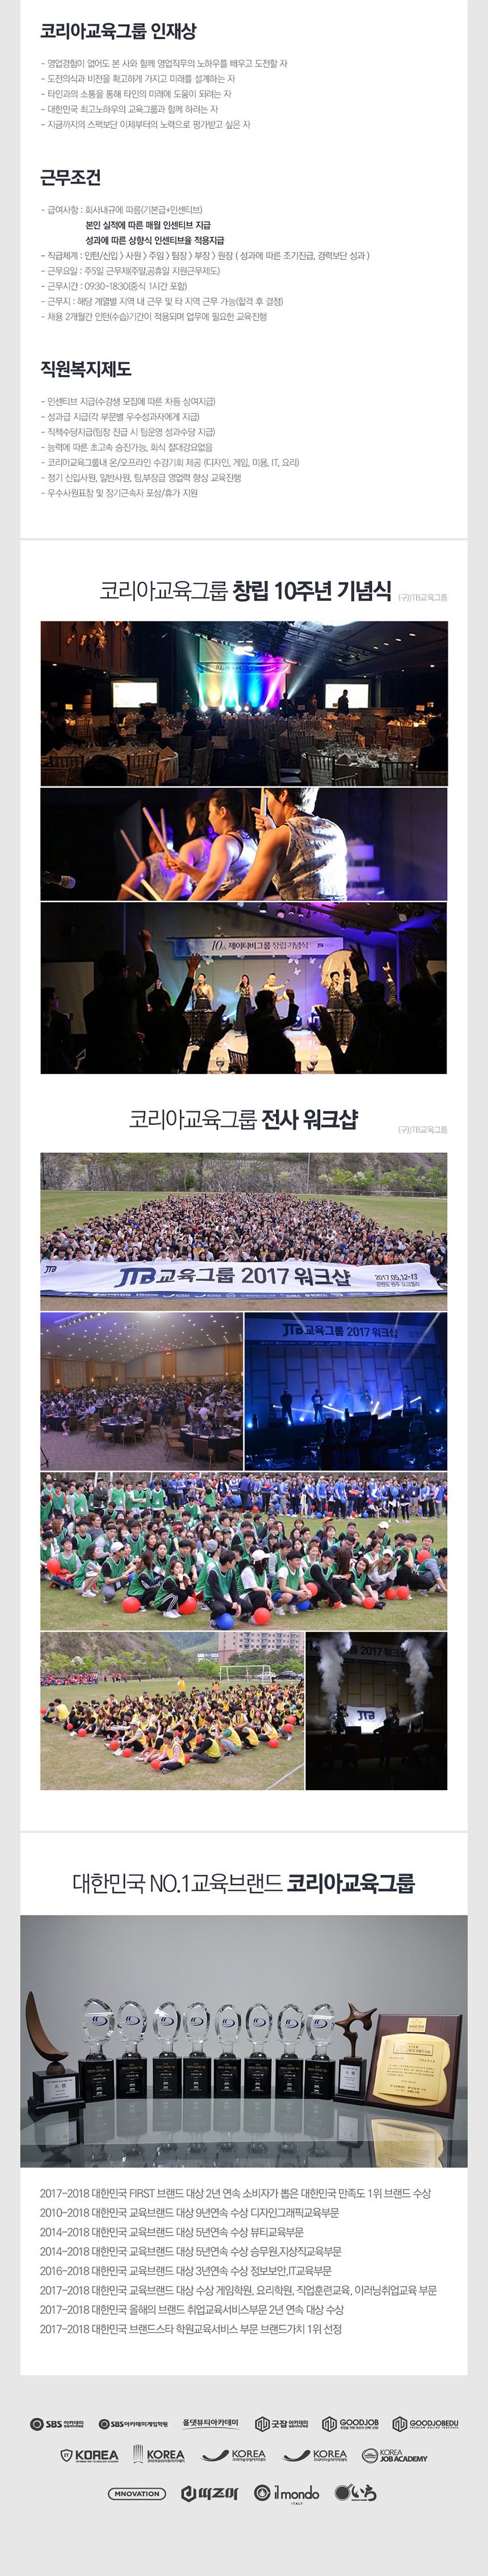 코리아교육그룹 (구)JTB교육그룹 전계열사 부분별 공개채용